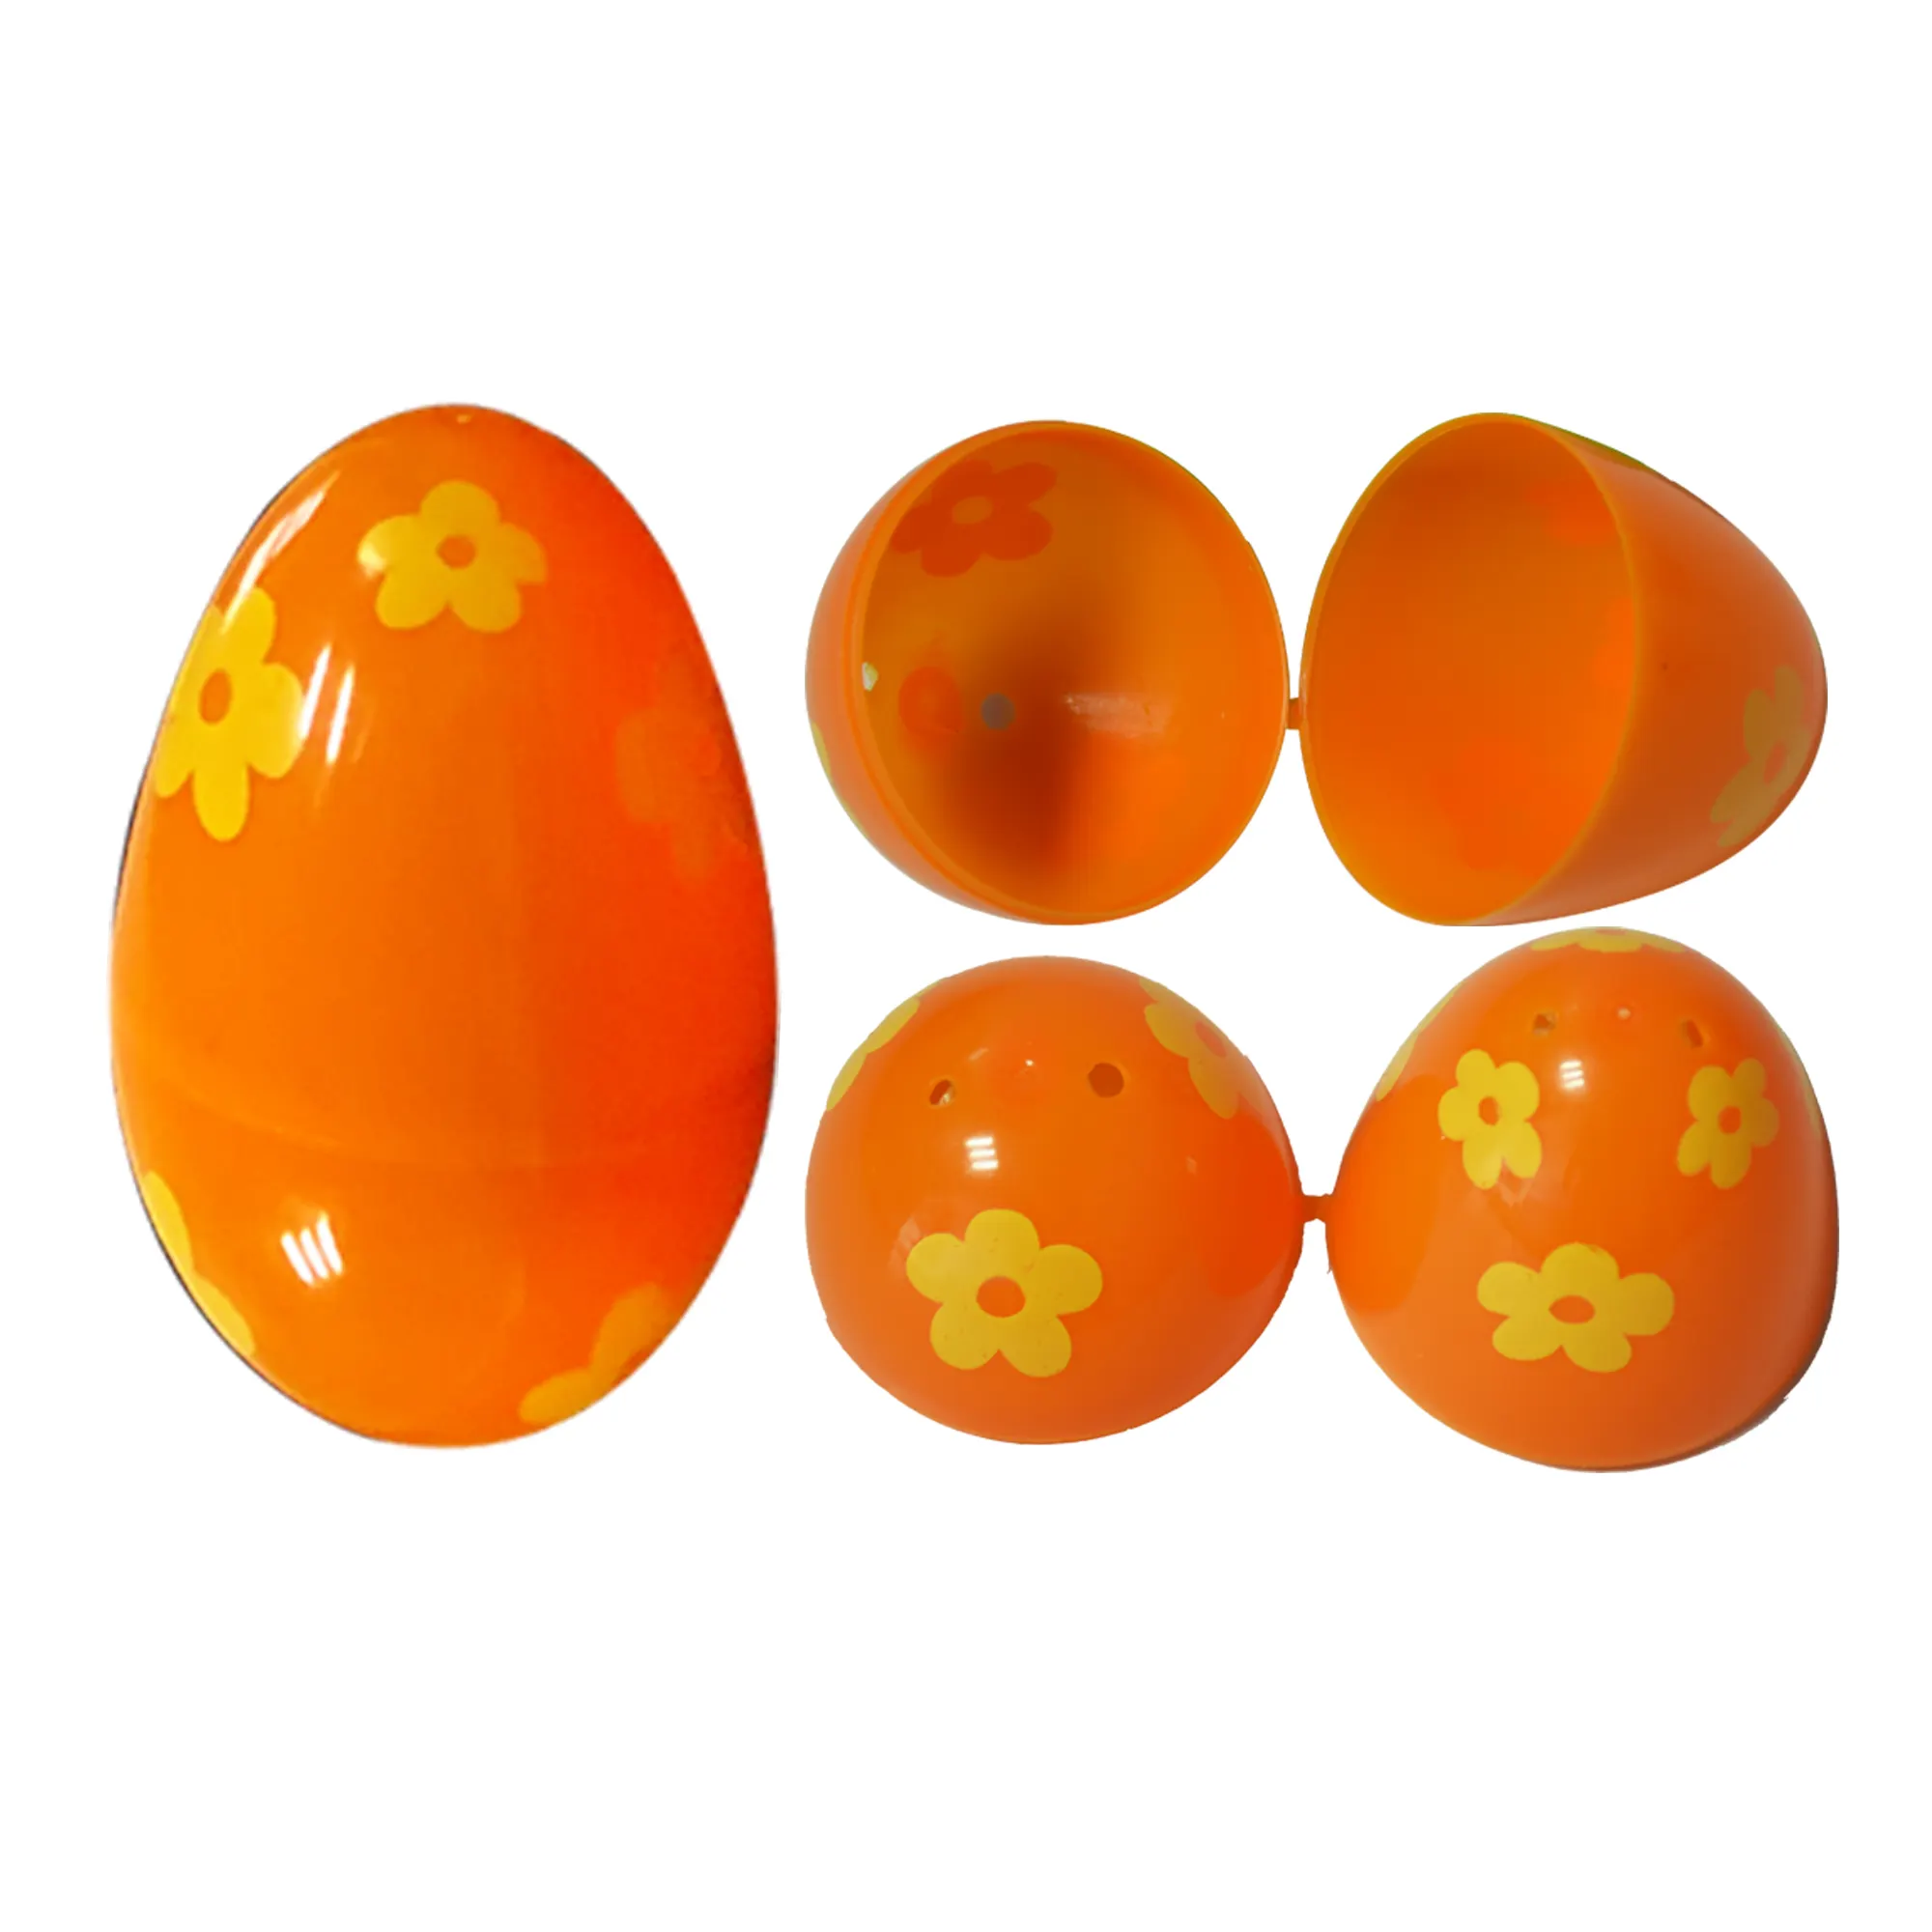 NEON-GLO Happy Plastic Egg with Toys Inside Bulk Surprise Egg Toys for Kids